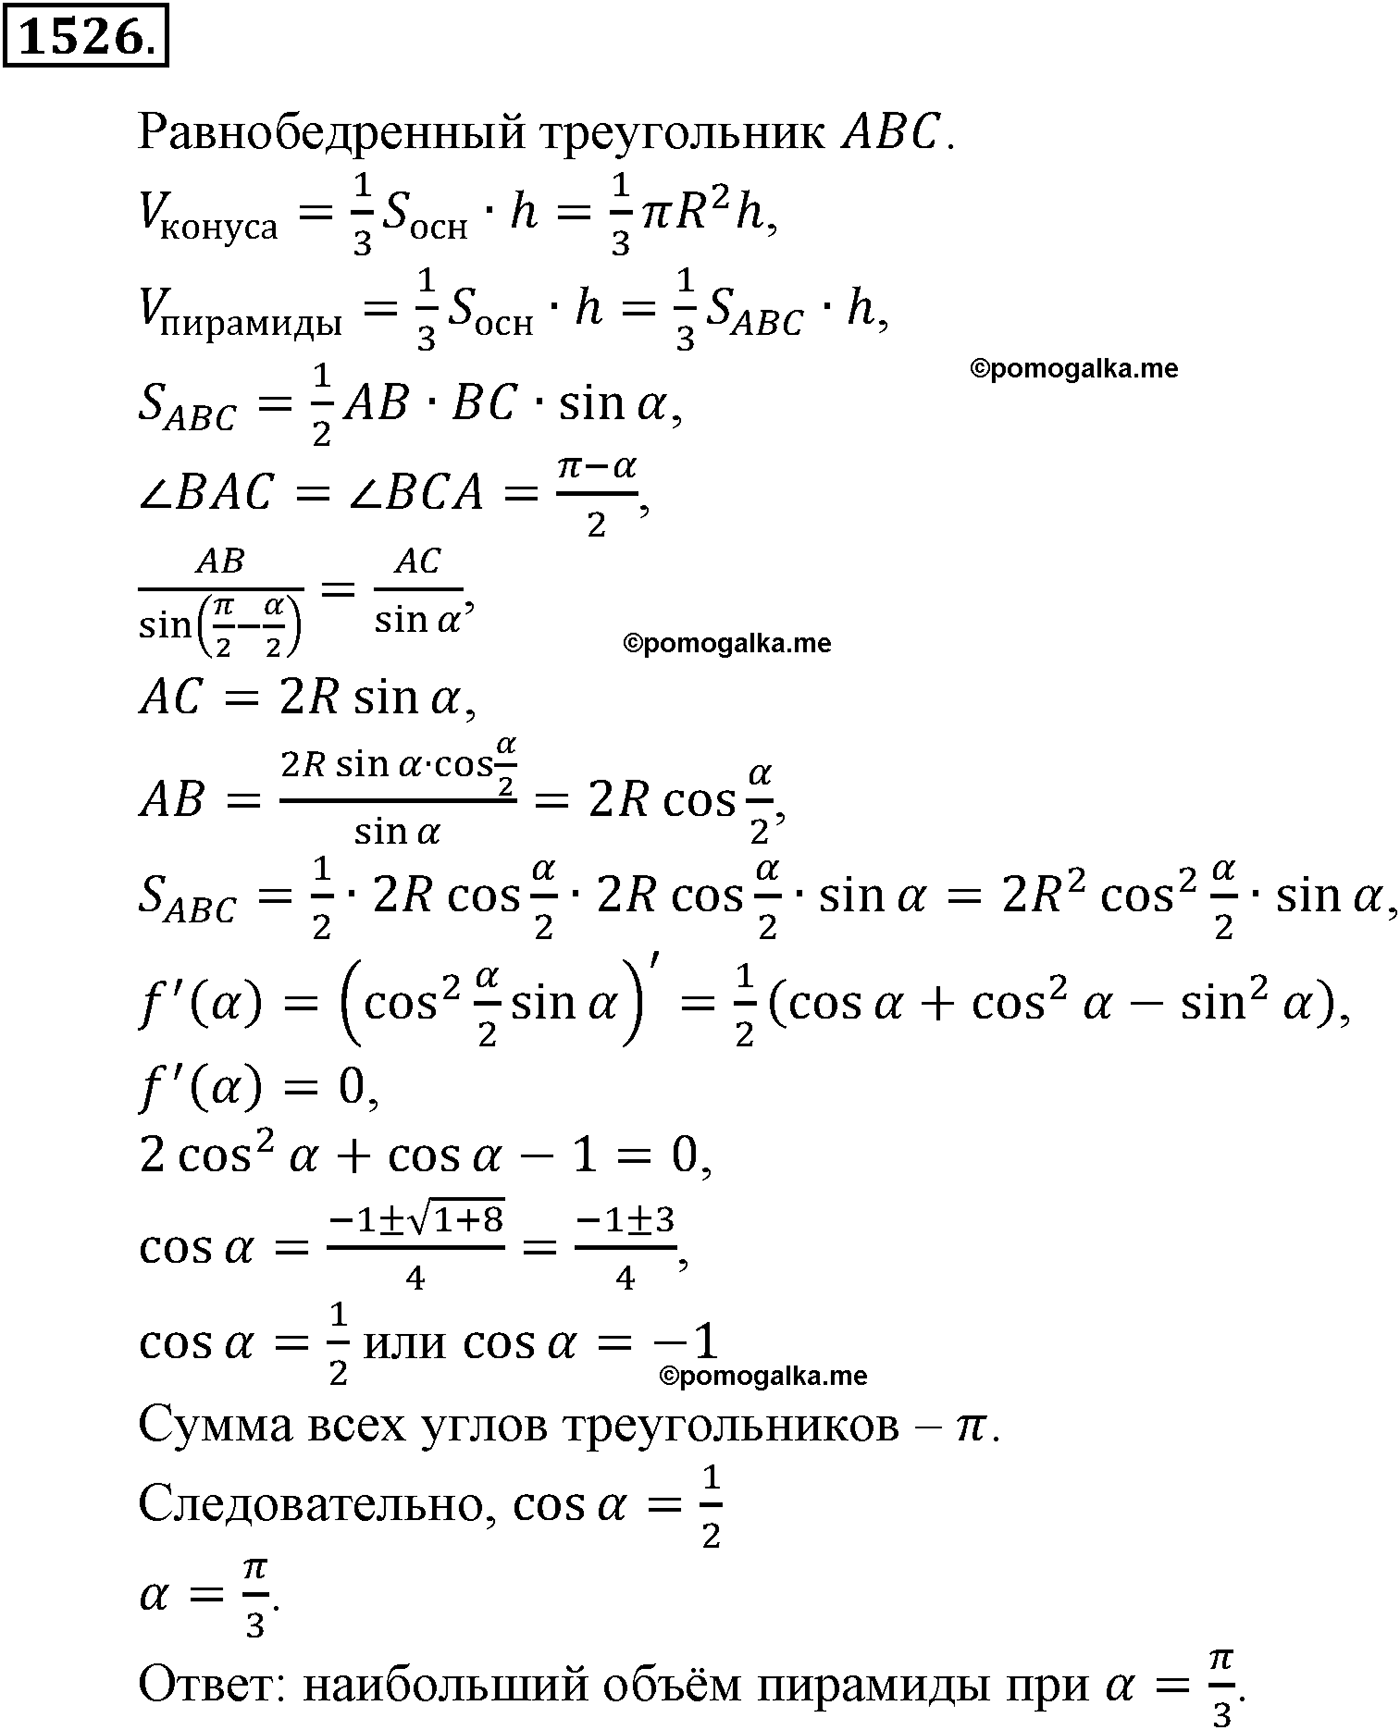 разбор задачи №1526 по алгебре за 10-11 класс из учебника Алимова, Колягина